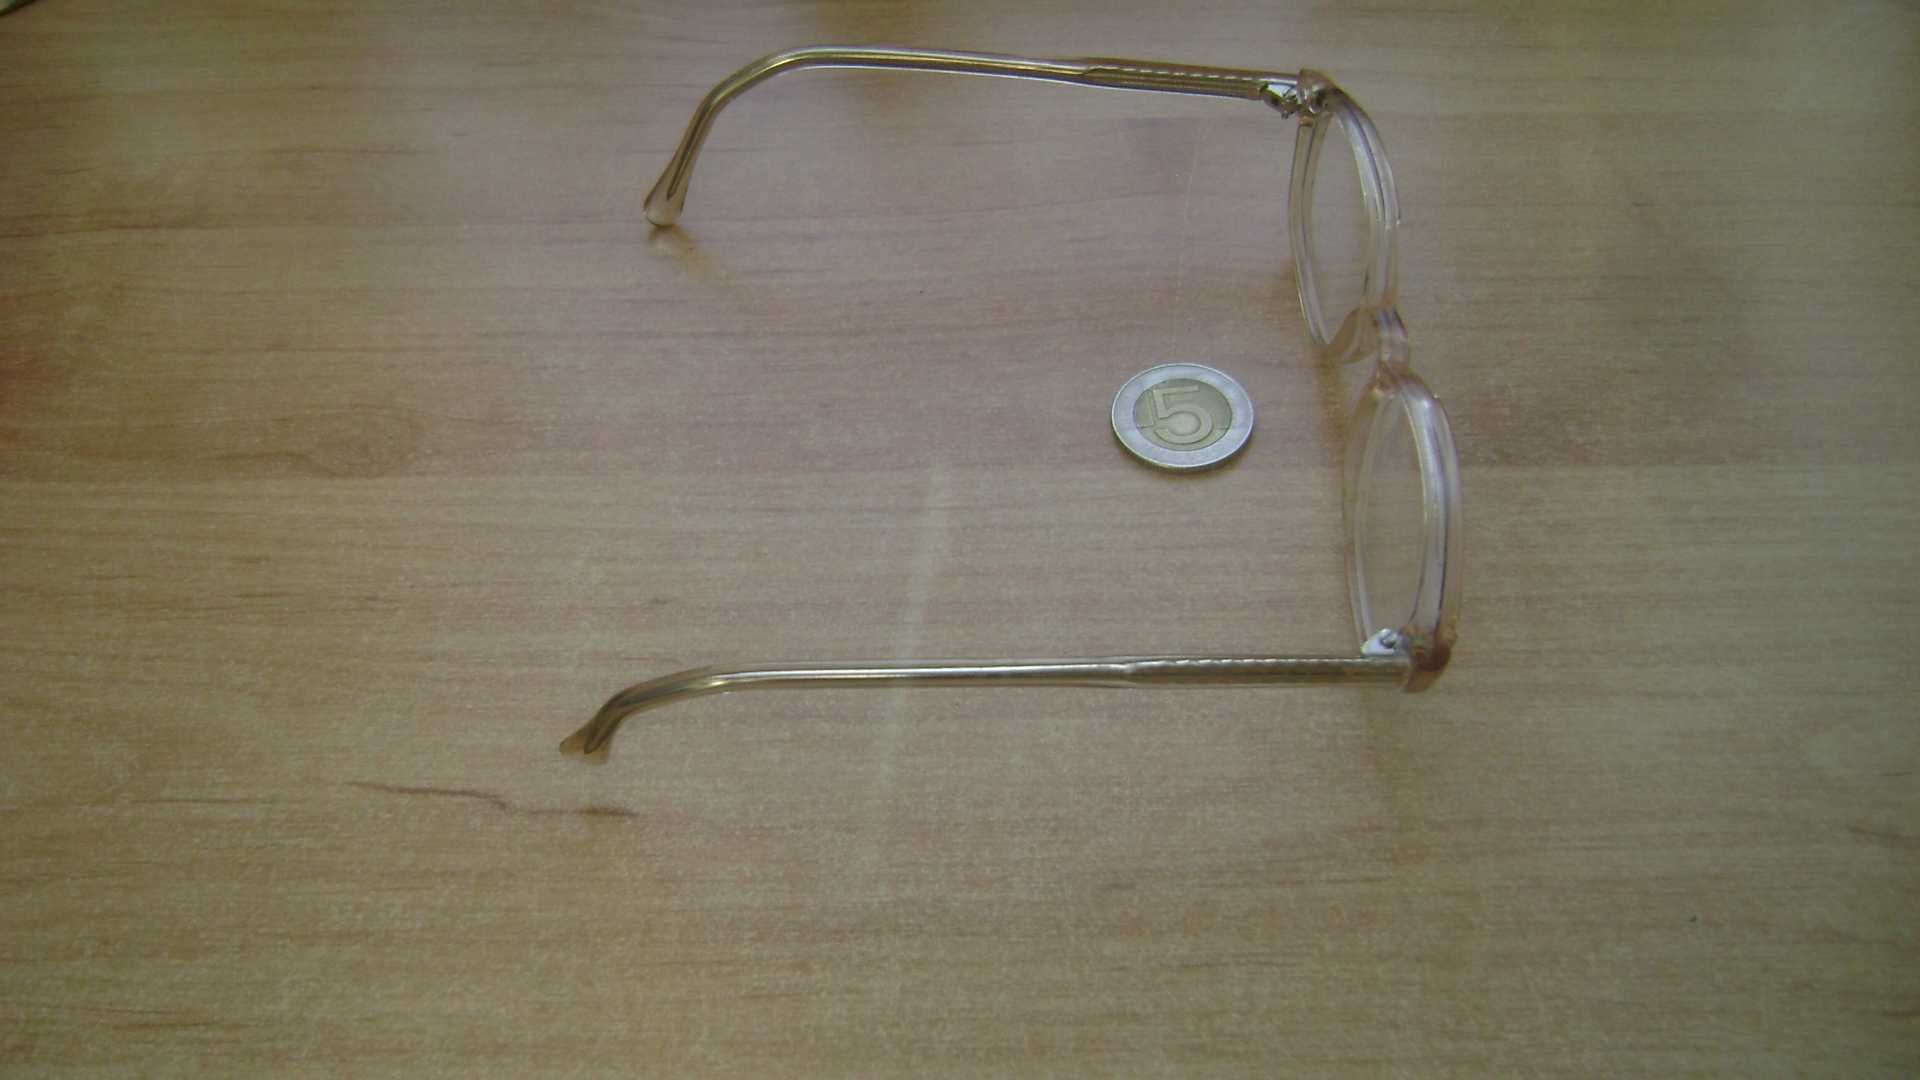 Starocie z PRL - Okulary damskie korekcyjne -1 dioptria rozstaw 13cm